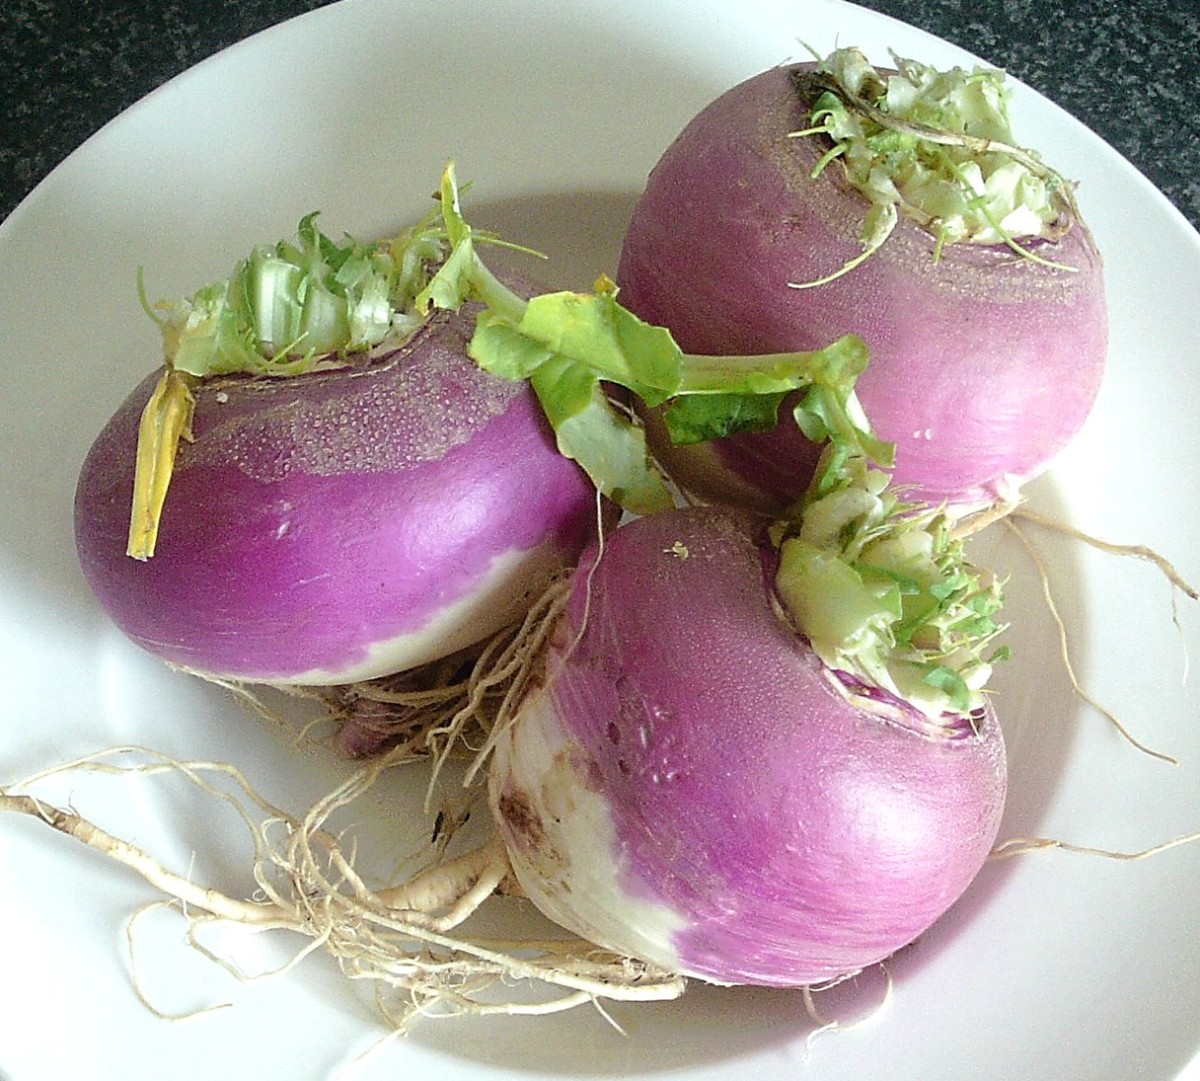 Freshly harvested white turnips